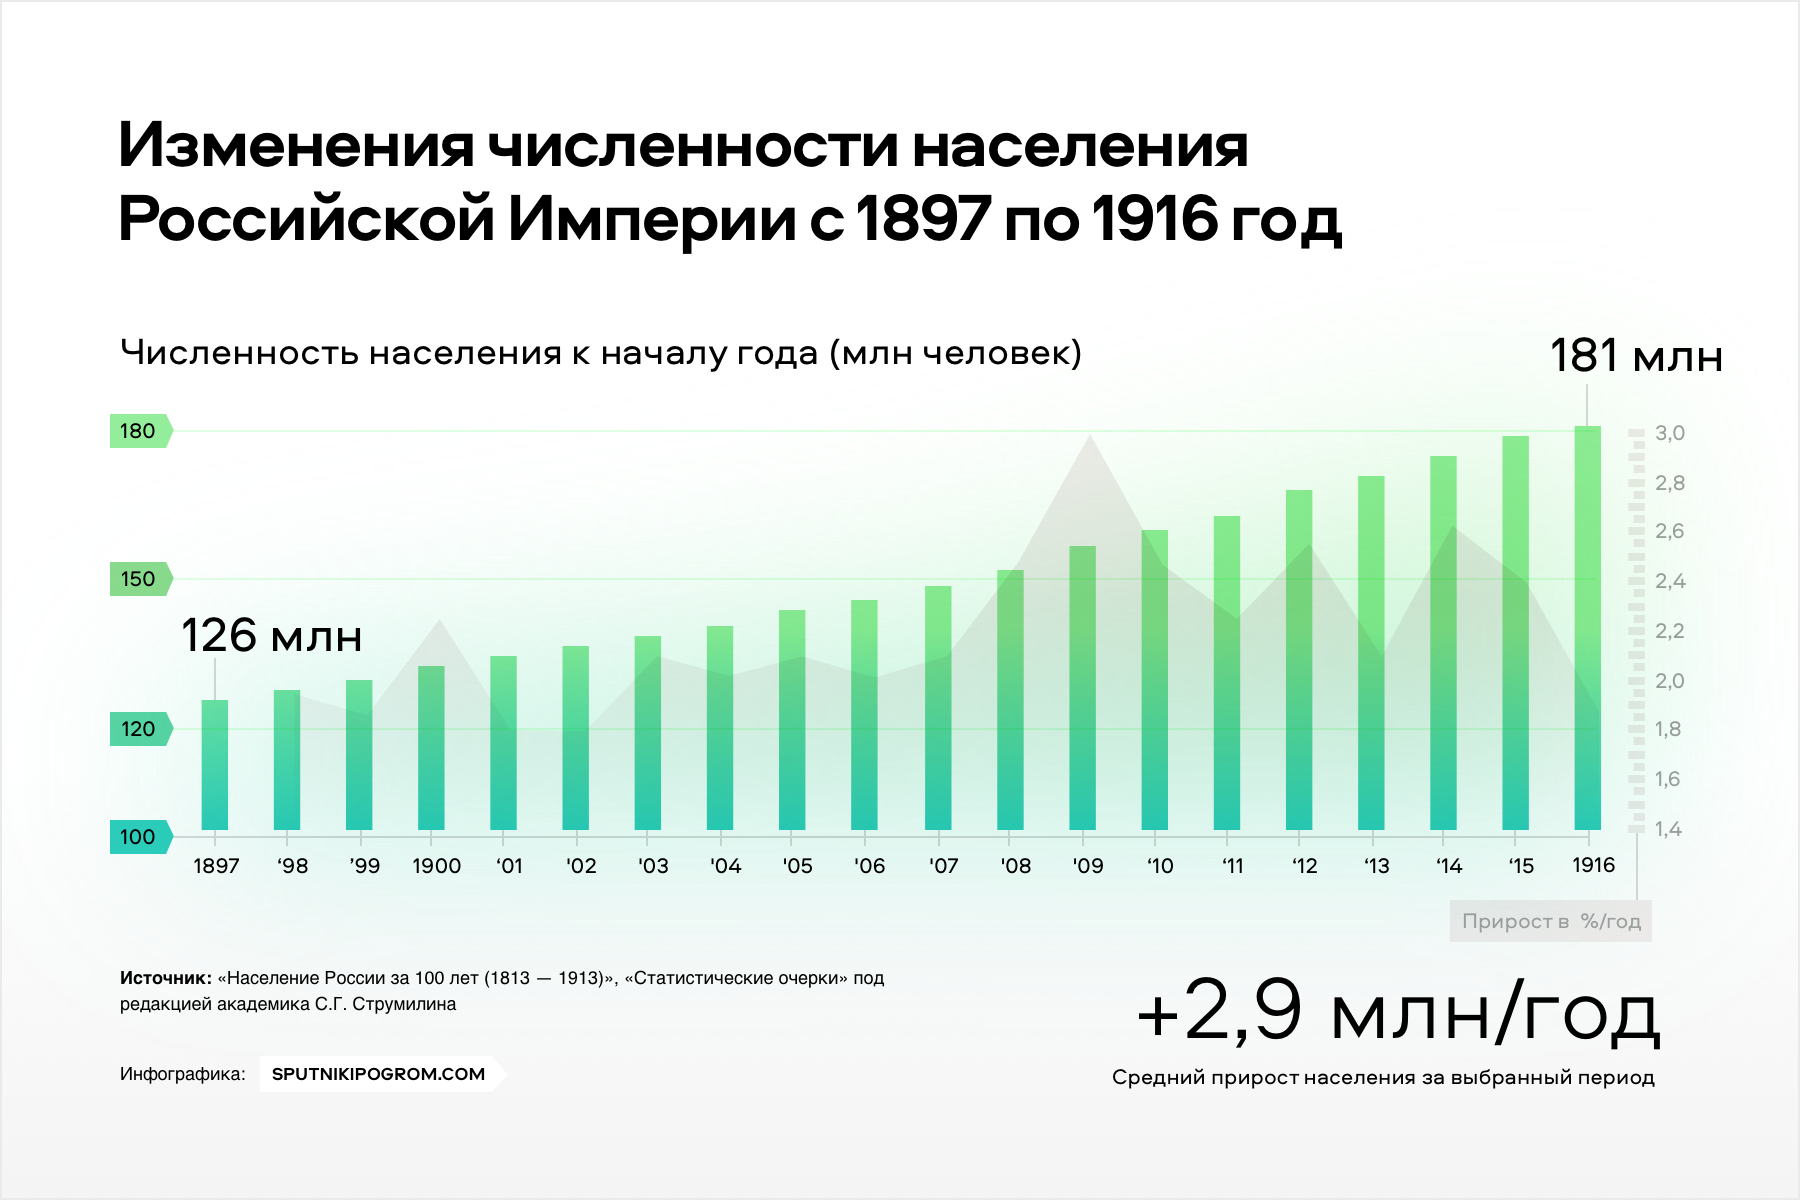 Численность россии на 2024 год составляет